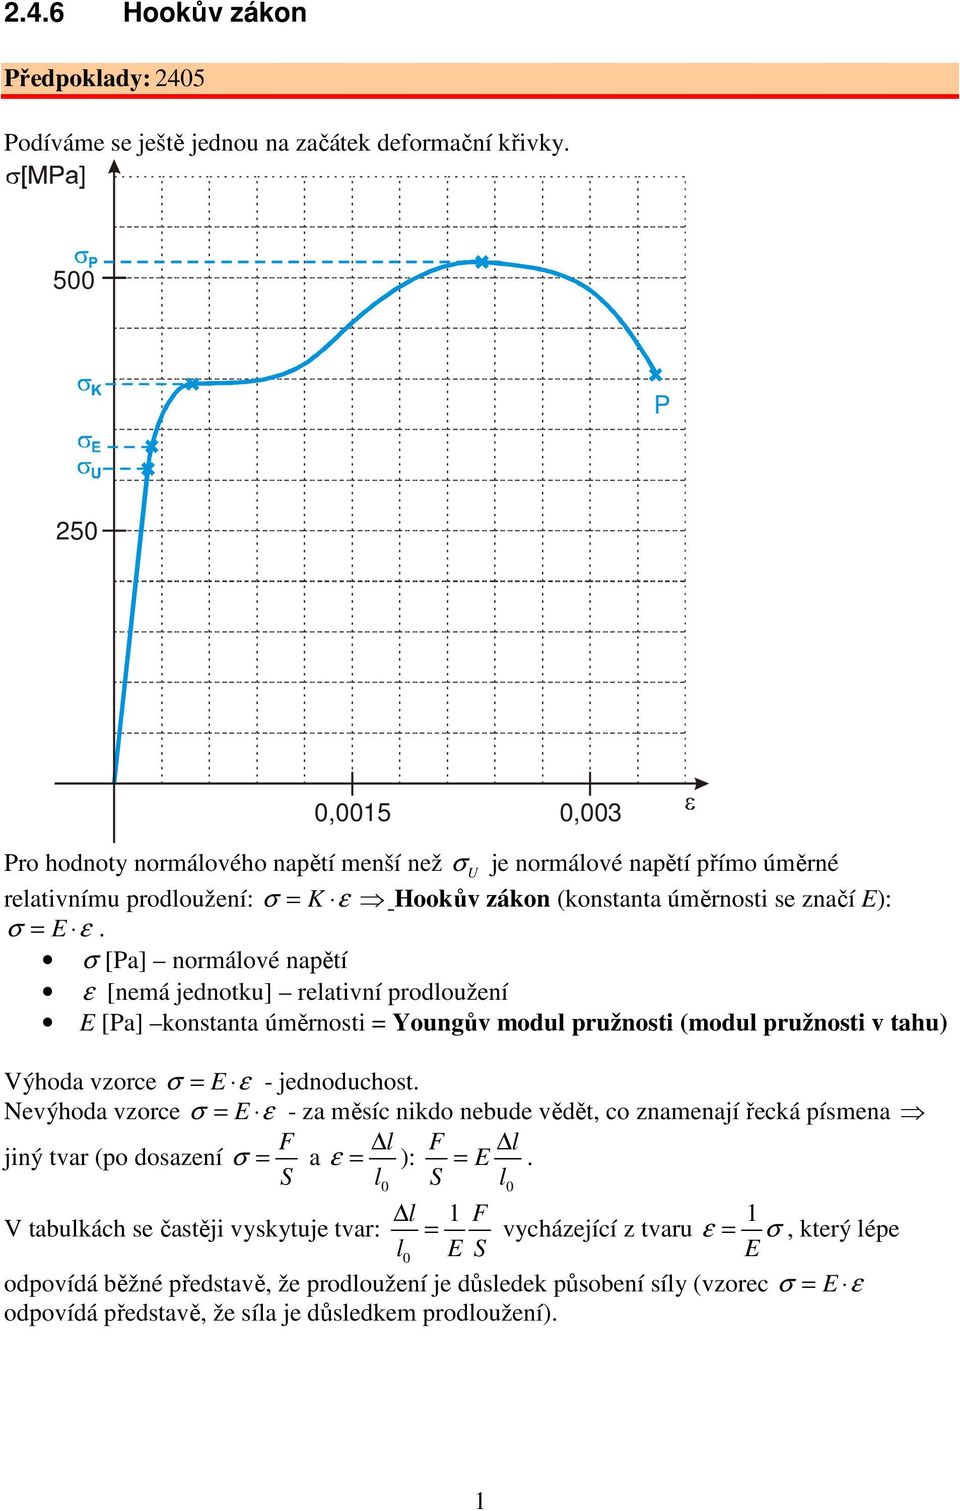 σ [Pa] normálové napětí ε [nemá jednotku] relativní prodloužení E [Pa] konstanta úměrnosti = Youngův modul pružnosti (modul pružnosti v tahu) Výhoda vzorce σ = E ε - jednoduchost.